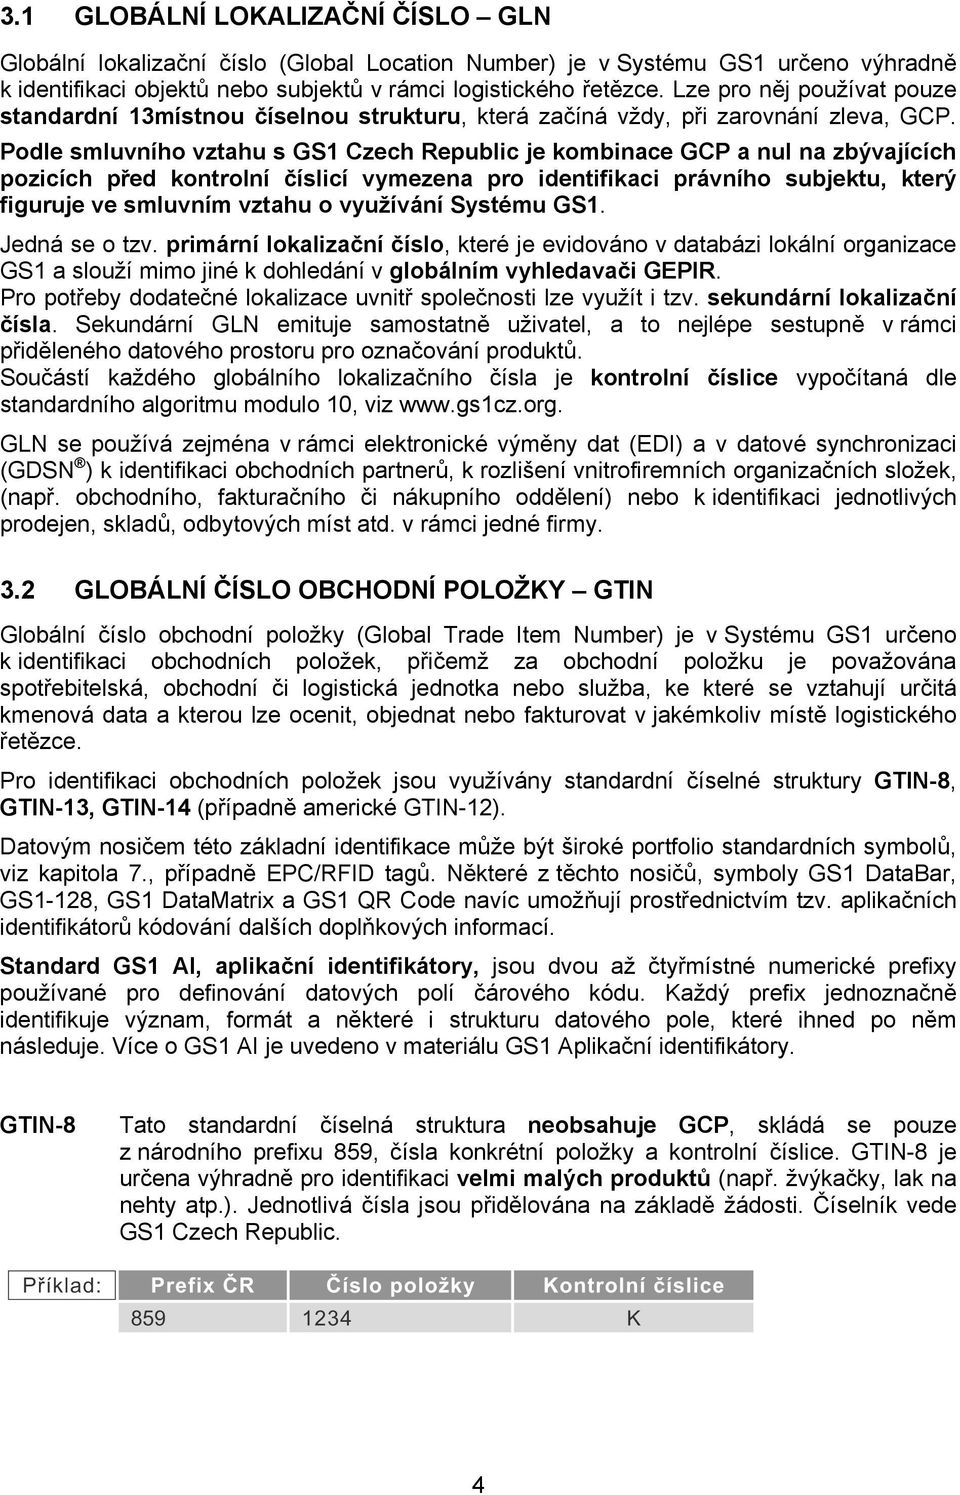 Podle smluvního vztahu s GS1 Czech Republic je kombinace GCP a nul na zbývajících pozicích před kontrolní číslicí vymezena pro identifikaci právního subjektu, který figuruje ve smluvním vztahu o